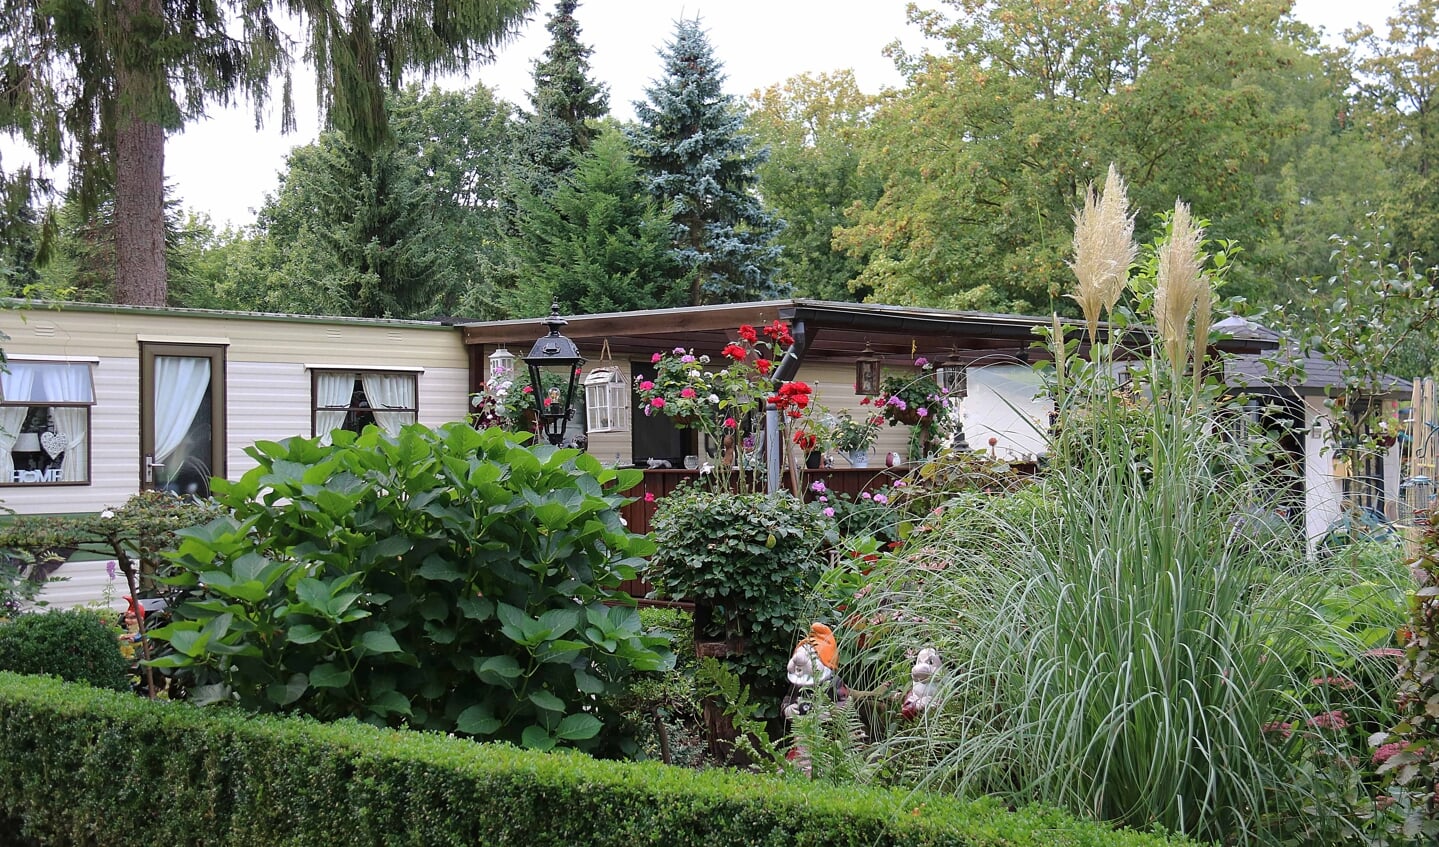 Eigenaren van bestaande stacaravans met verzorgde tuinen kunnen vooralsnog jaarlijks hun plek blijven huren bij EuroParcs.